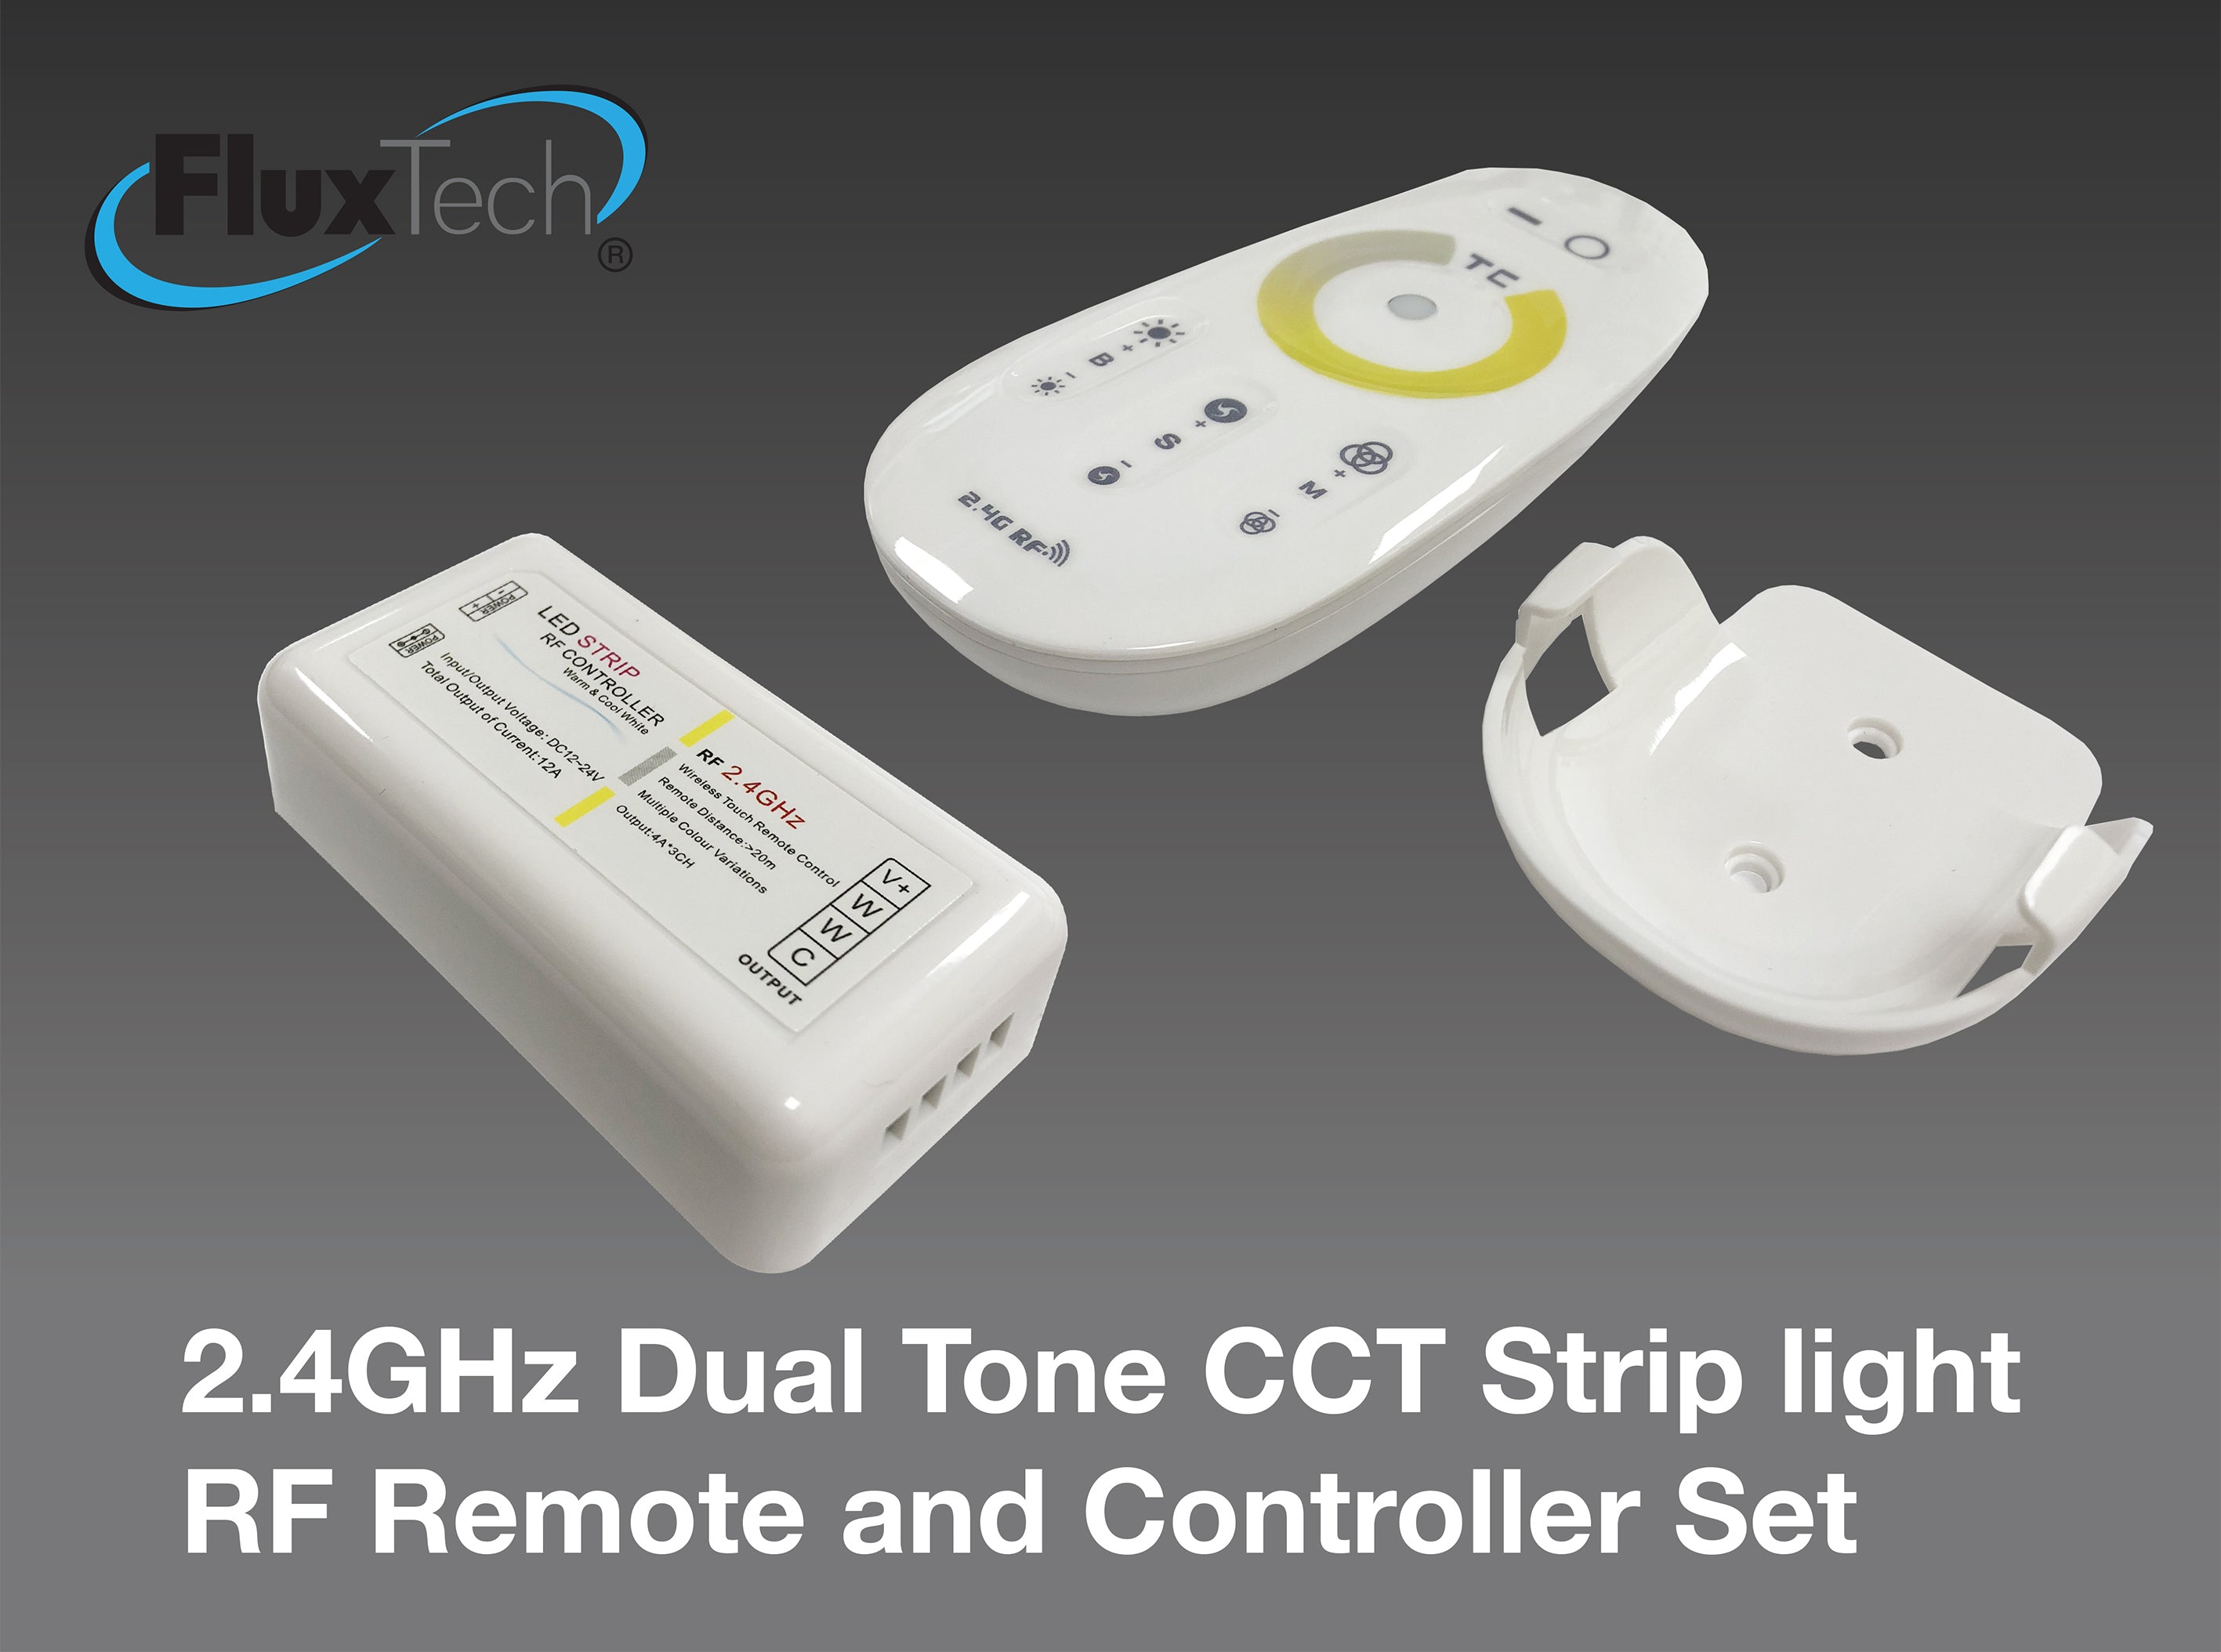 2.4GHz Dual Tone CCT Remote & Controller Unit Set